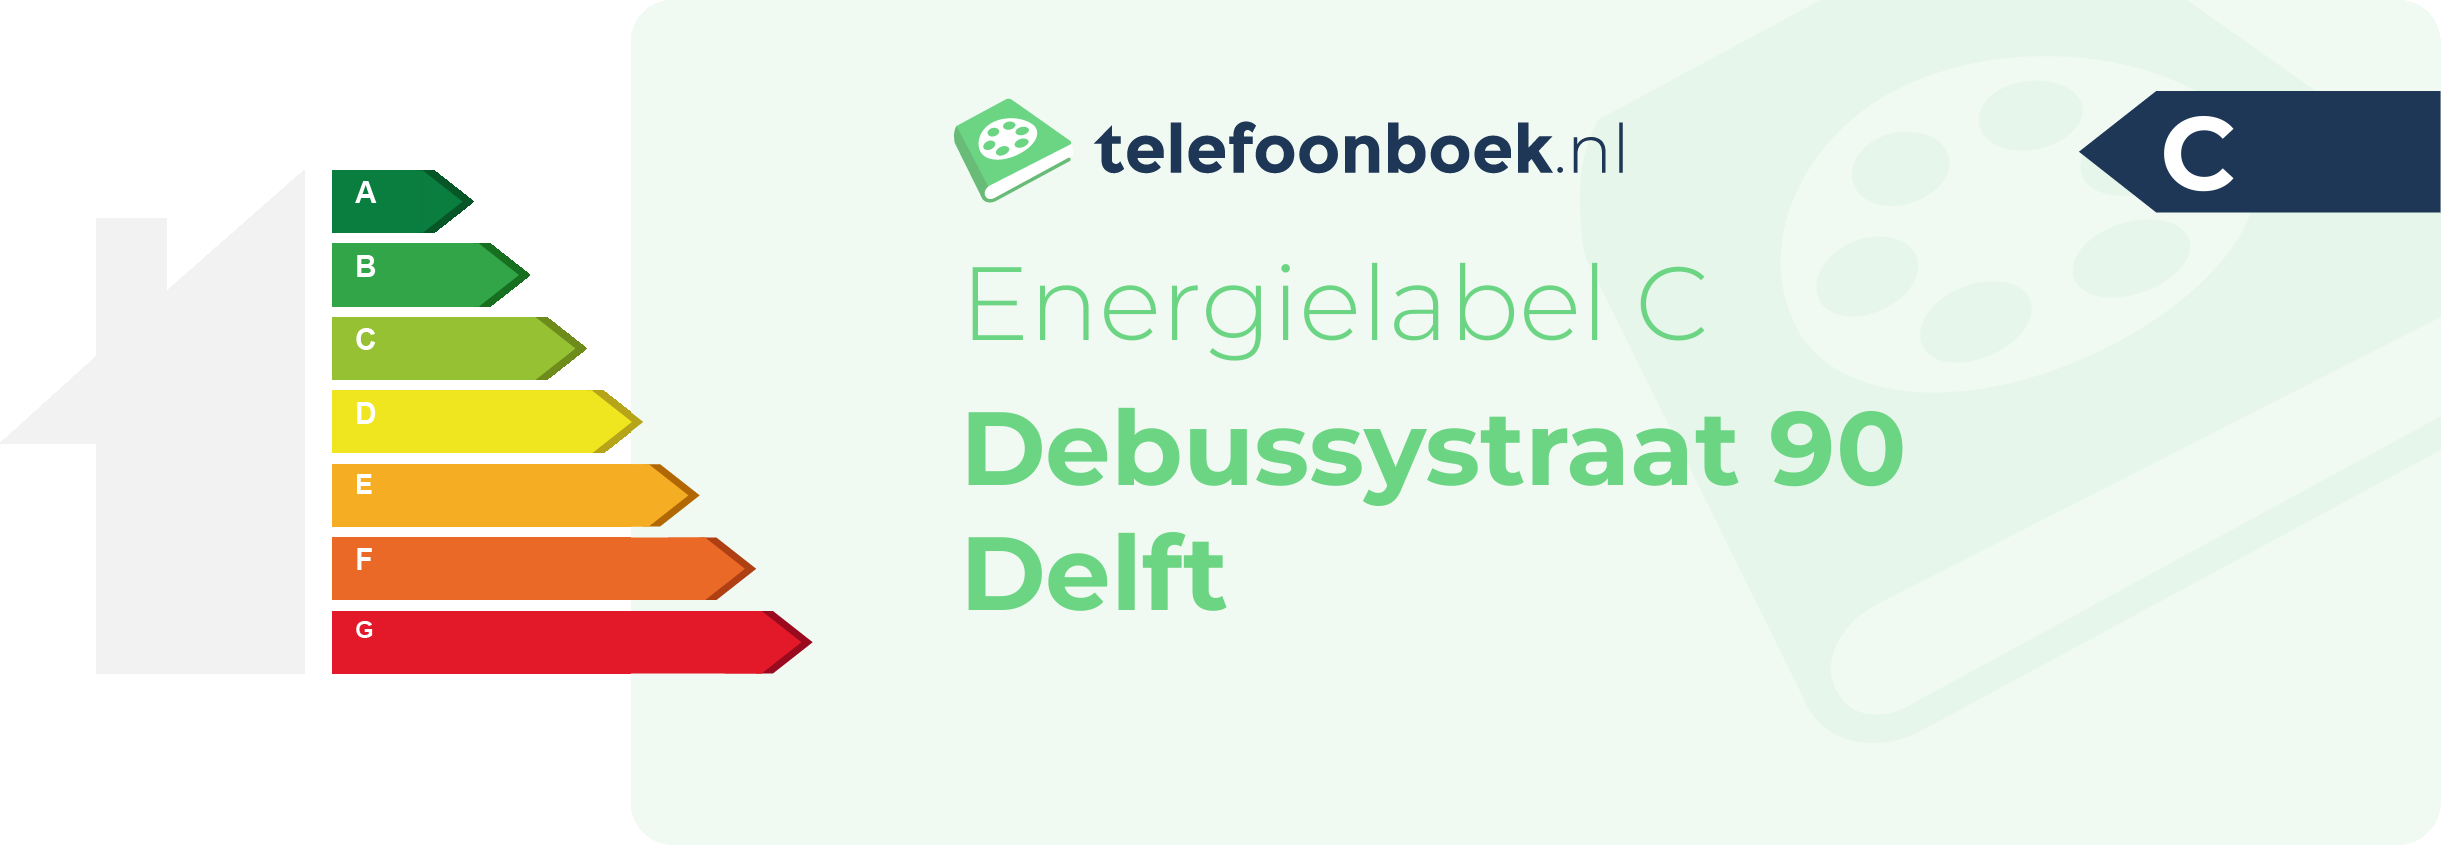 Energielabel Debussystraat 90 Delft